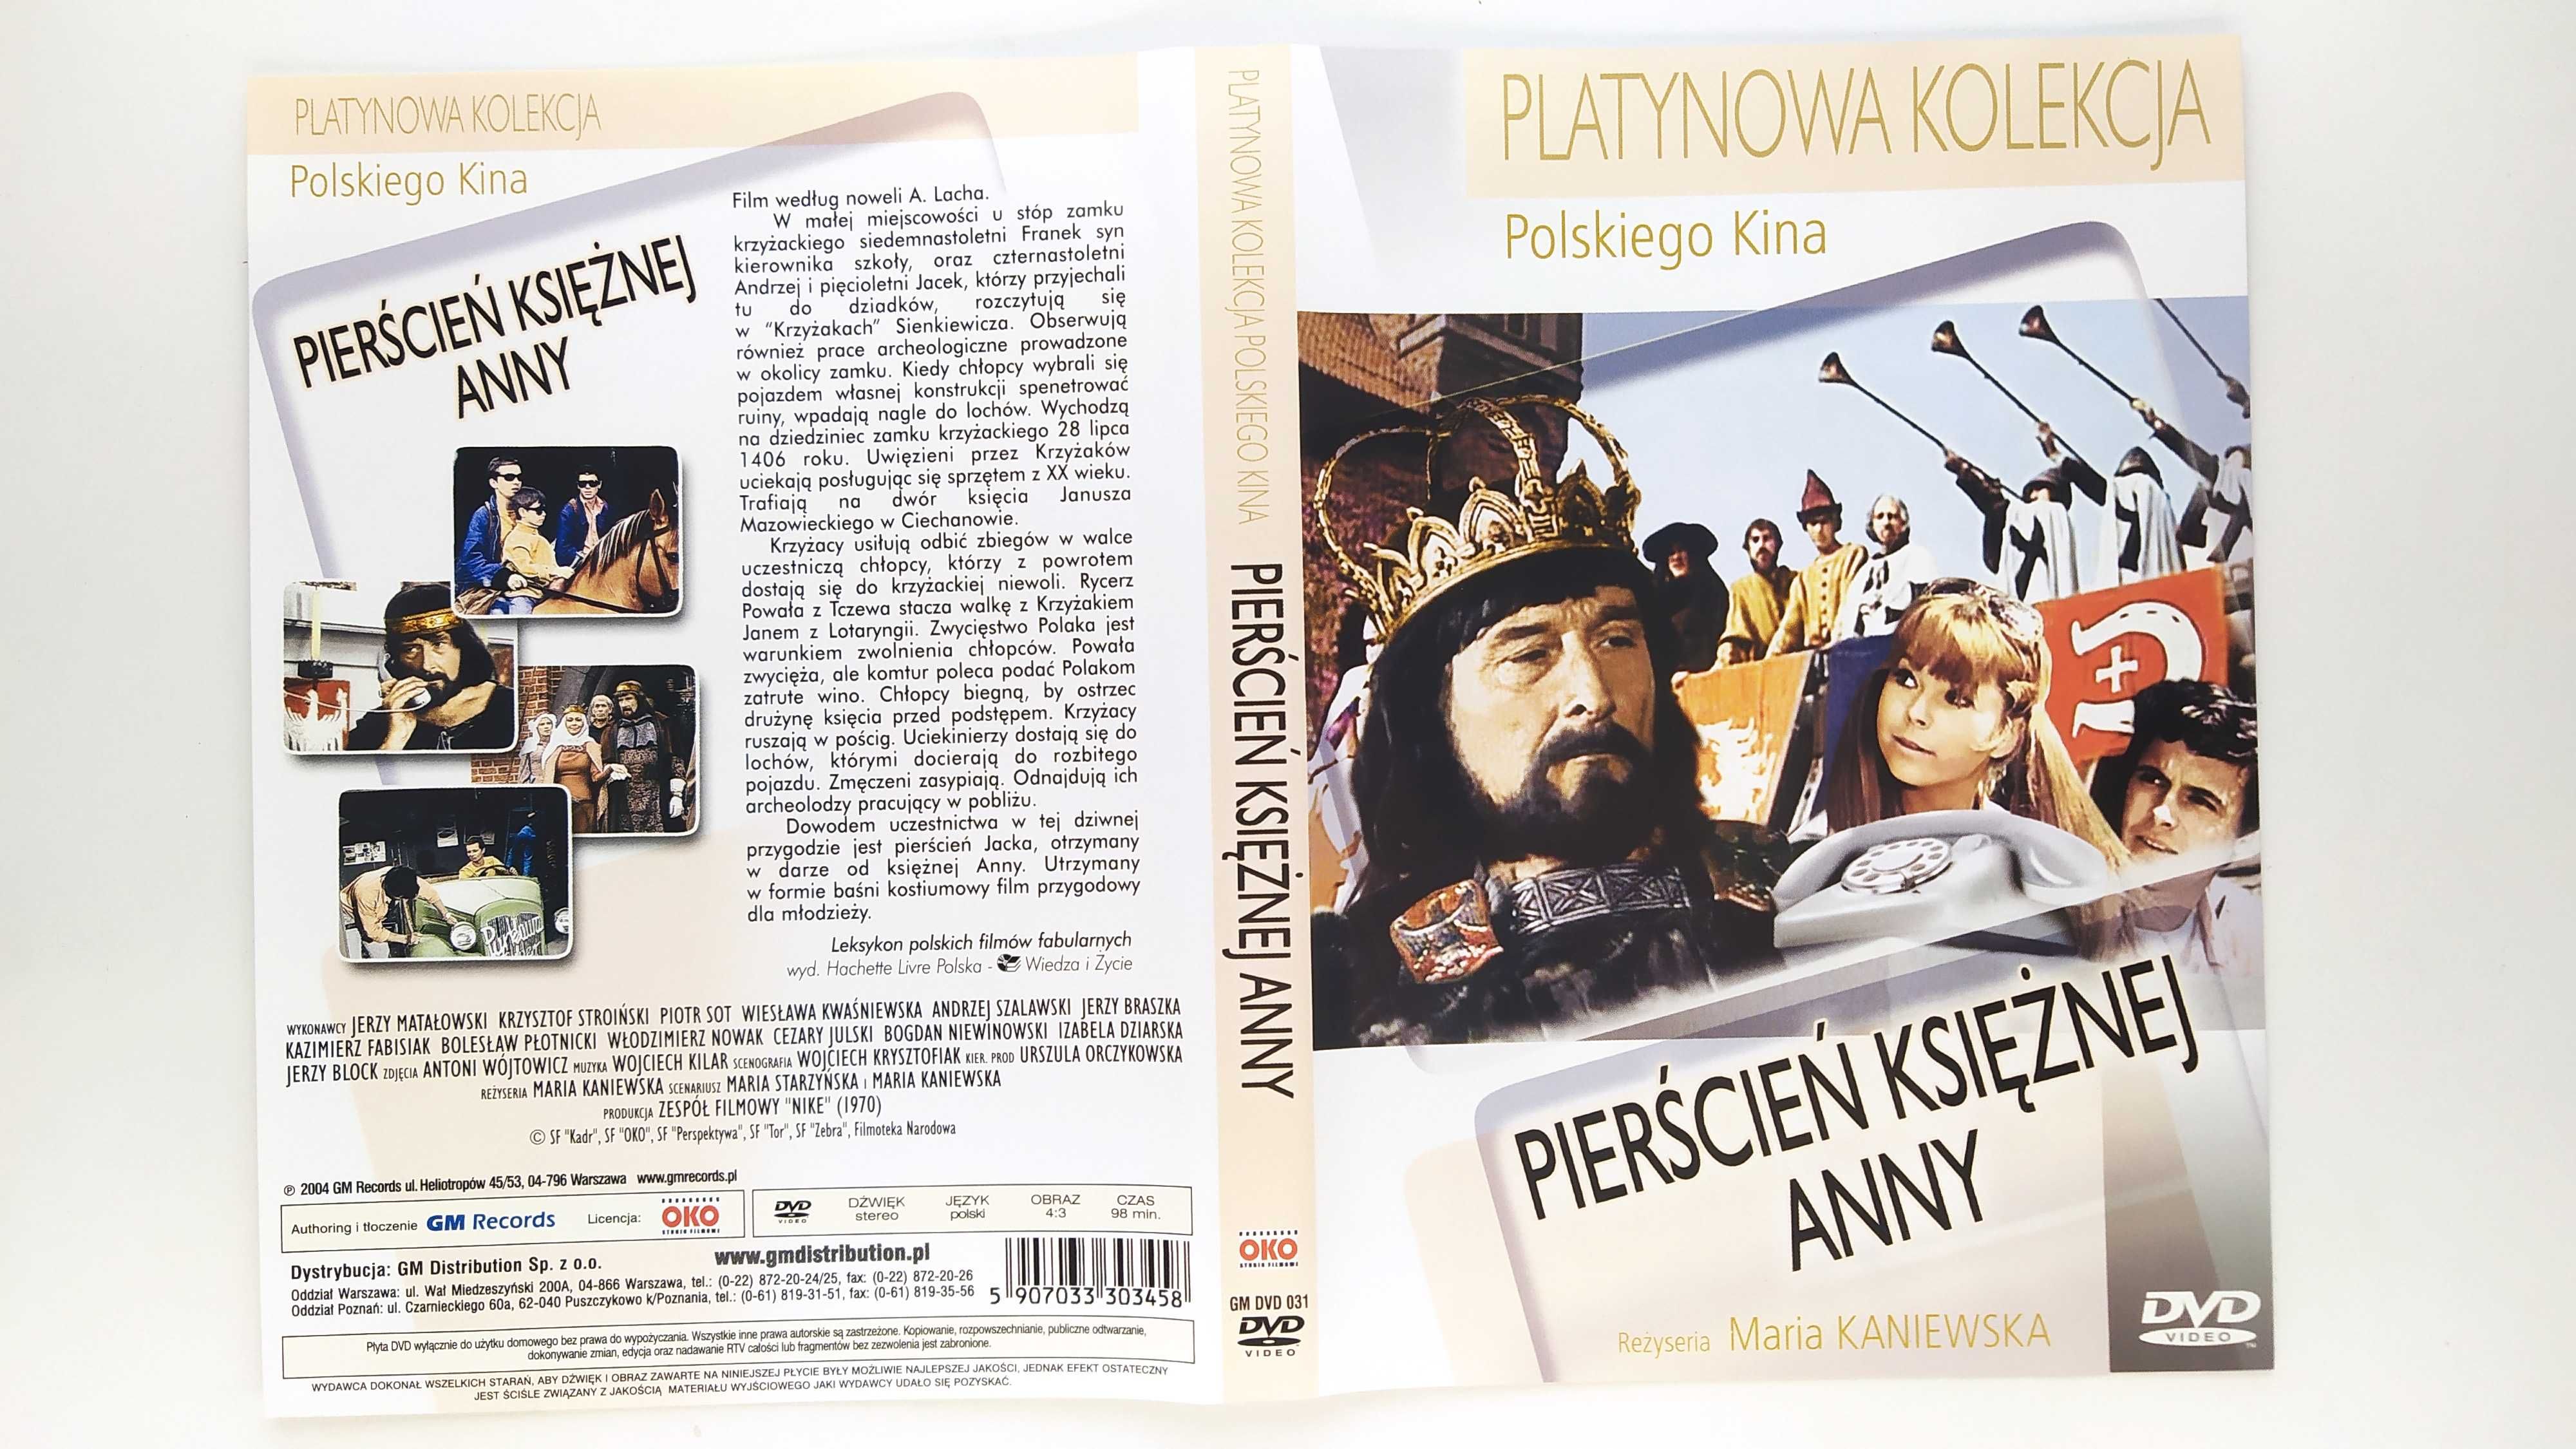 Pierścień księżnej Anny DVD Platynowa Kolekcja Polskiego Kina Kaniewsk